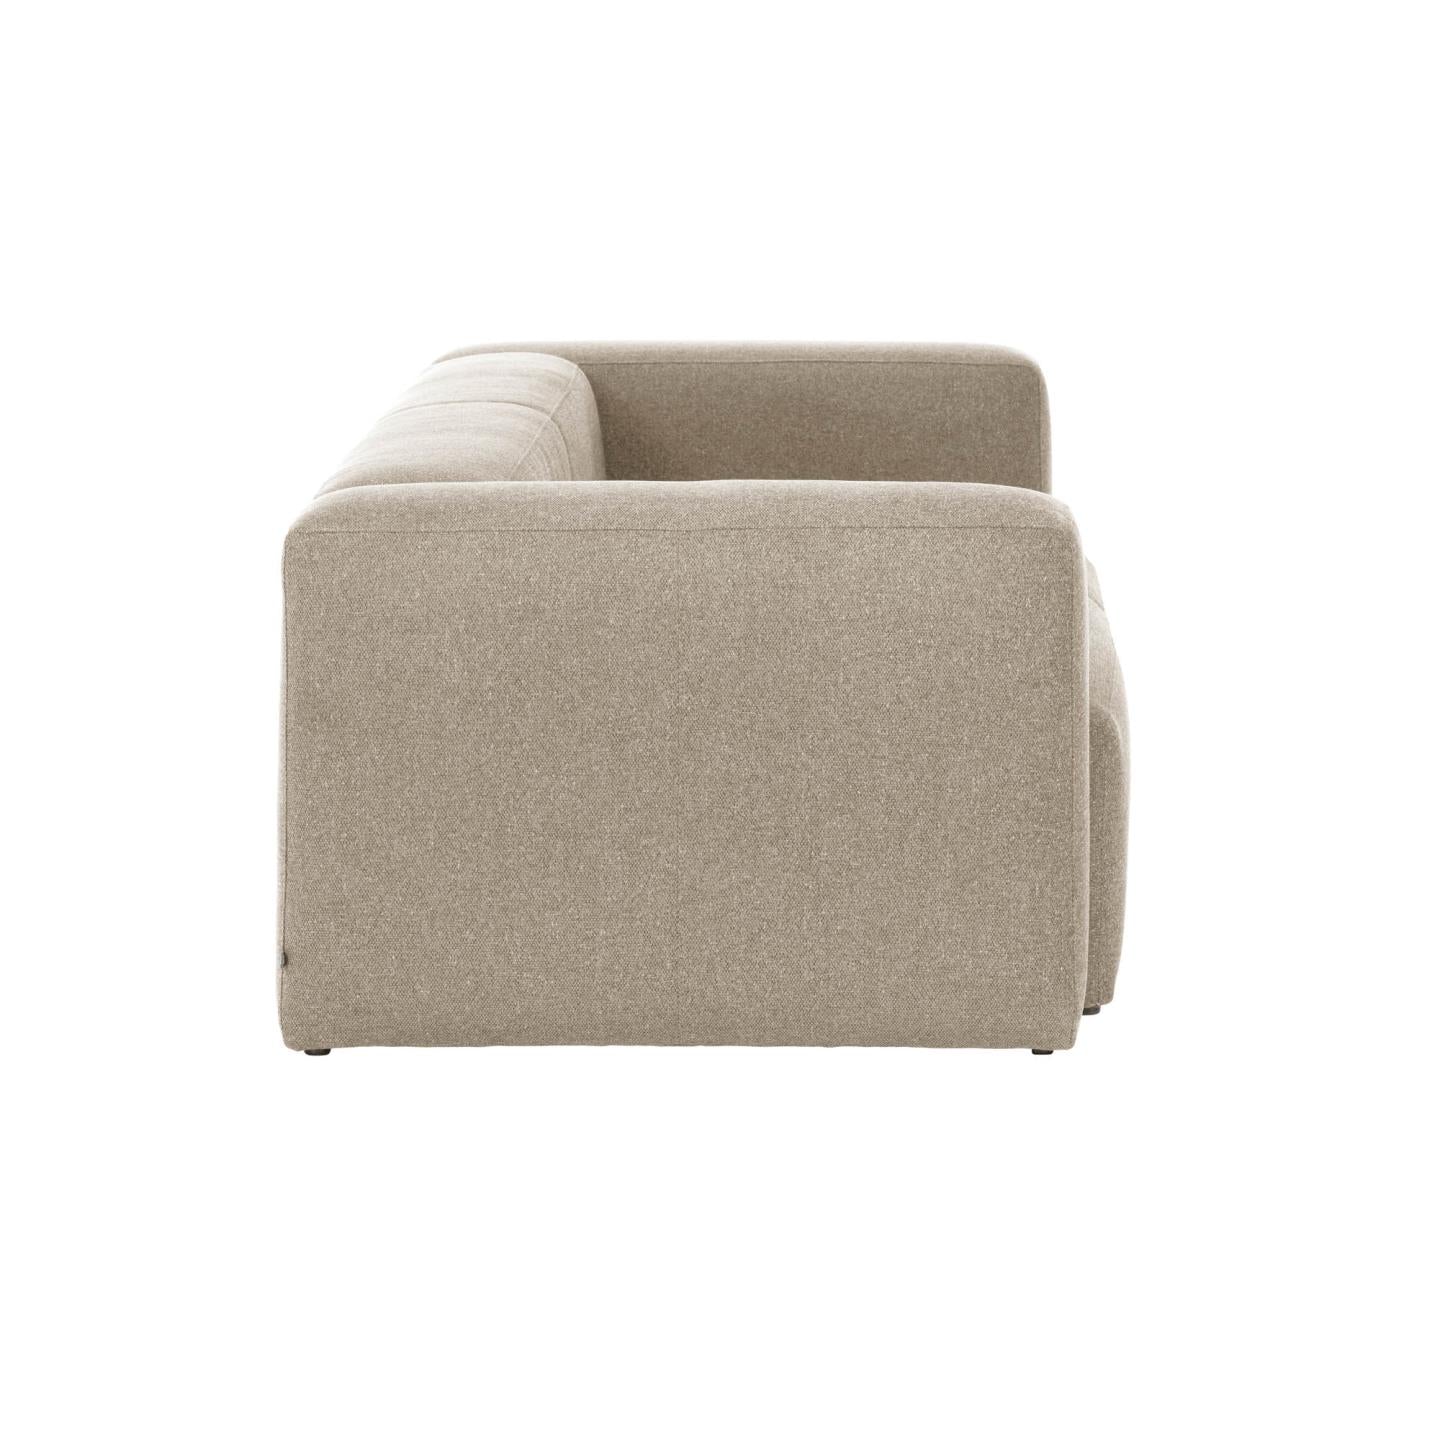 Blok 3 személyes kanapé bézs színben, 240 cm